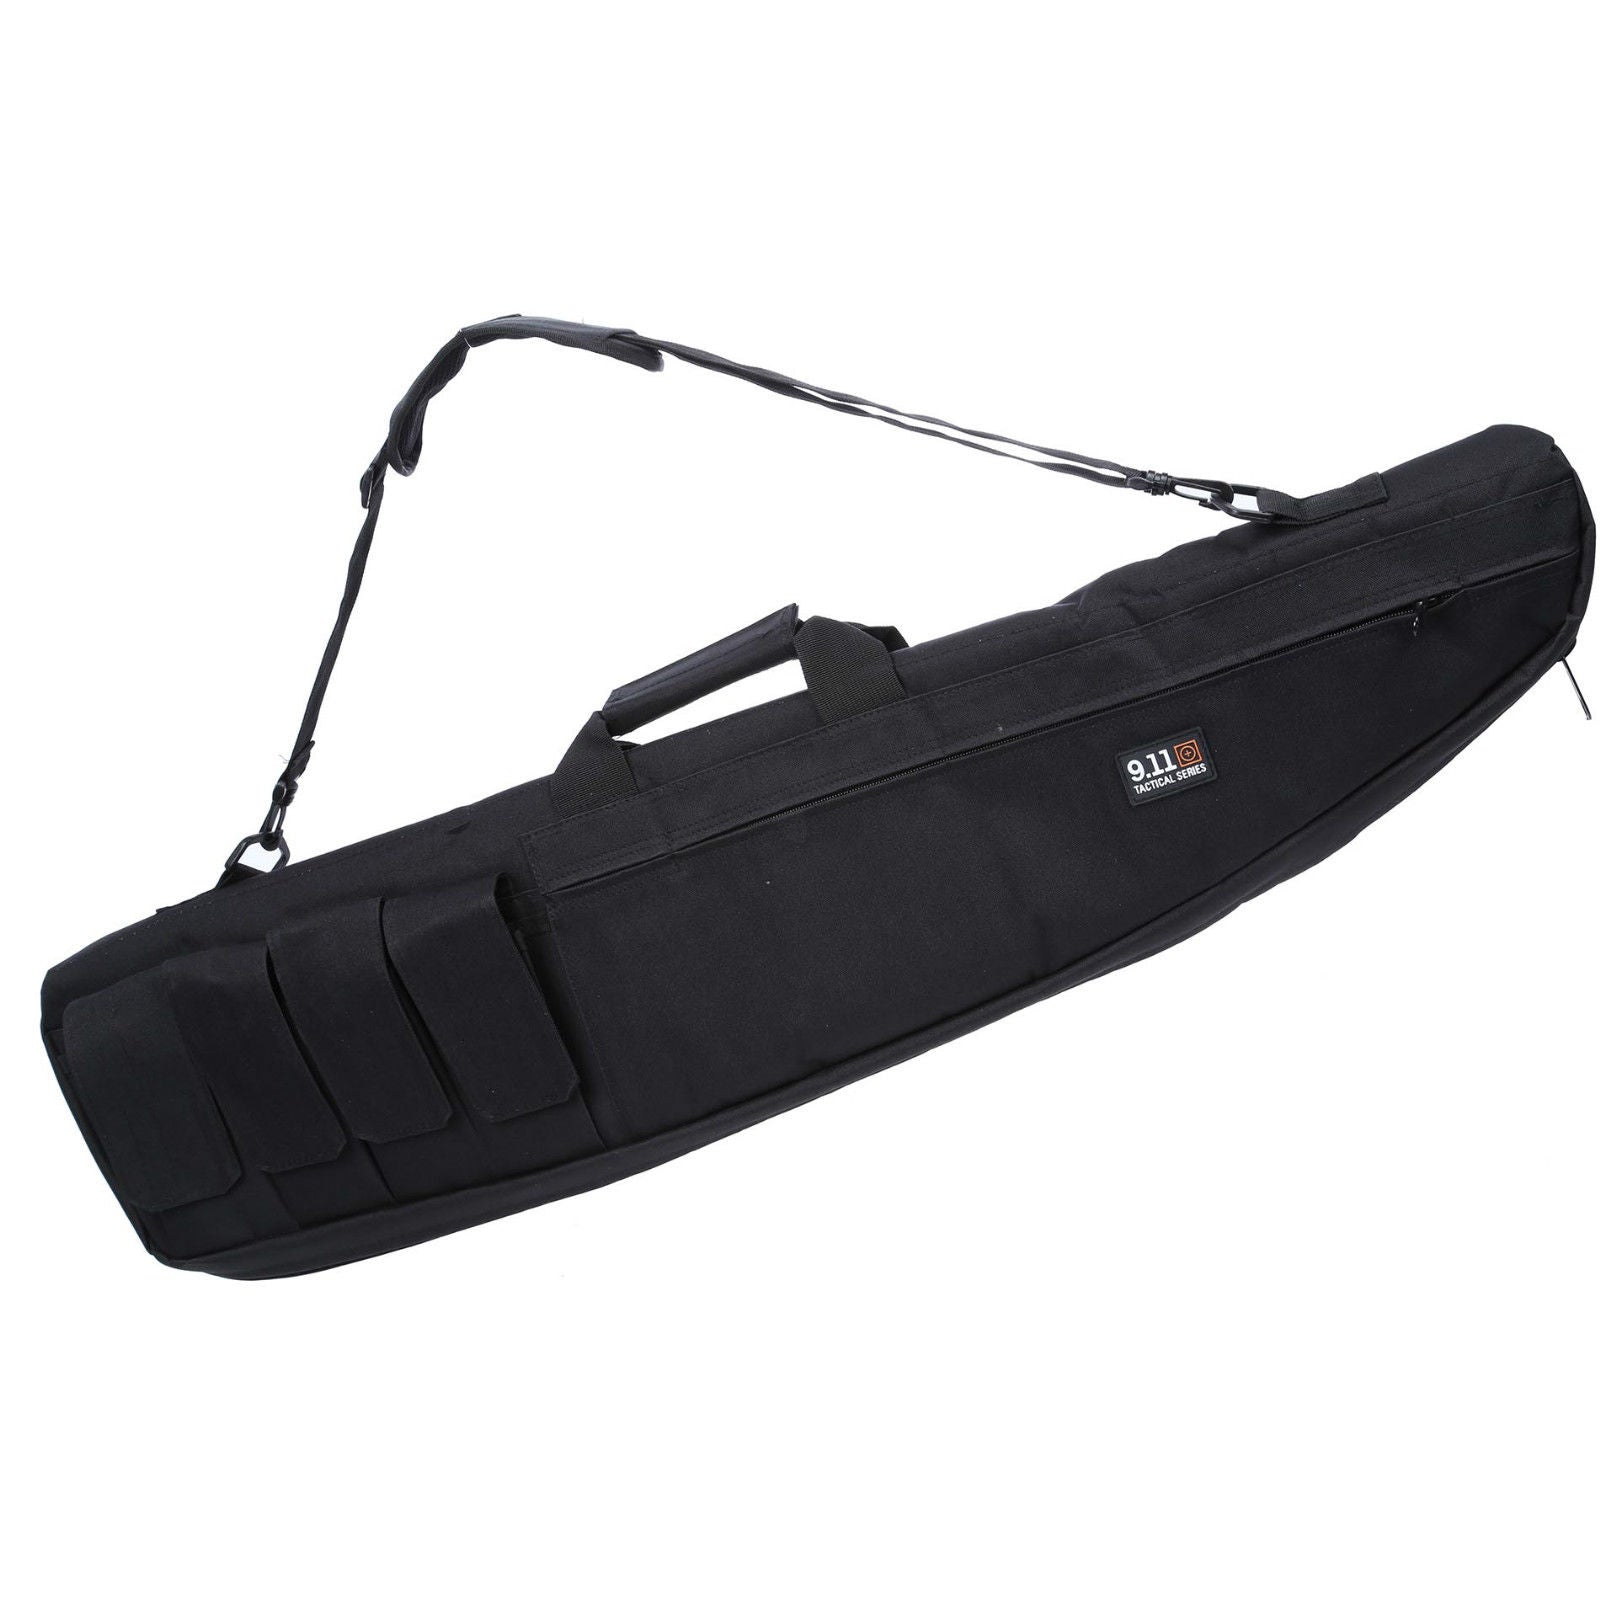 Gel Blaster Soft Carry Black Bag 